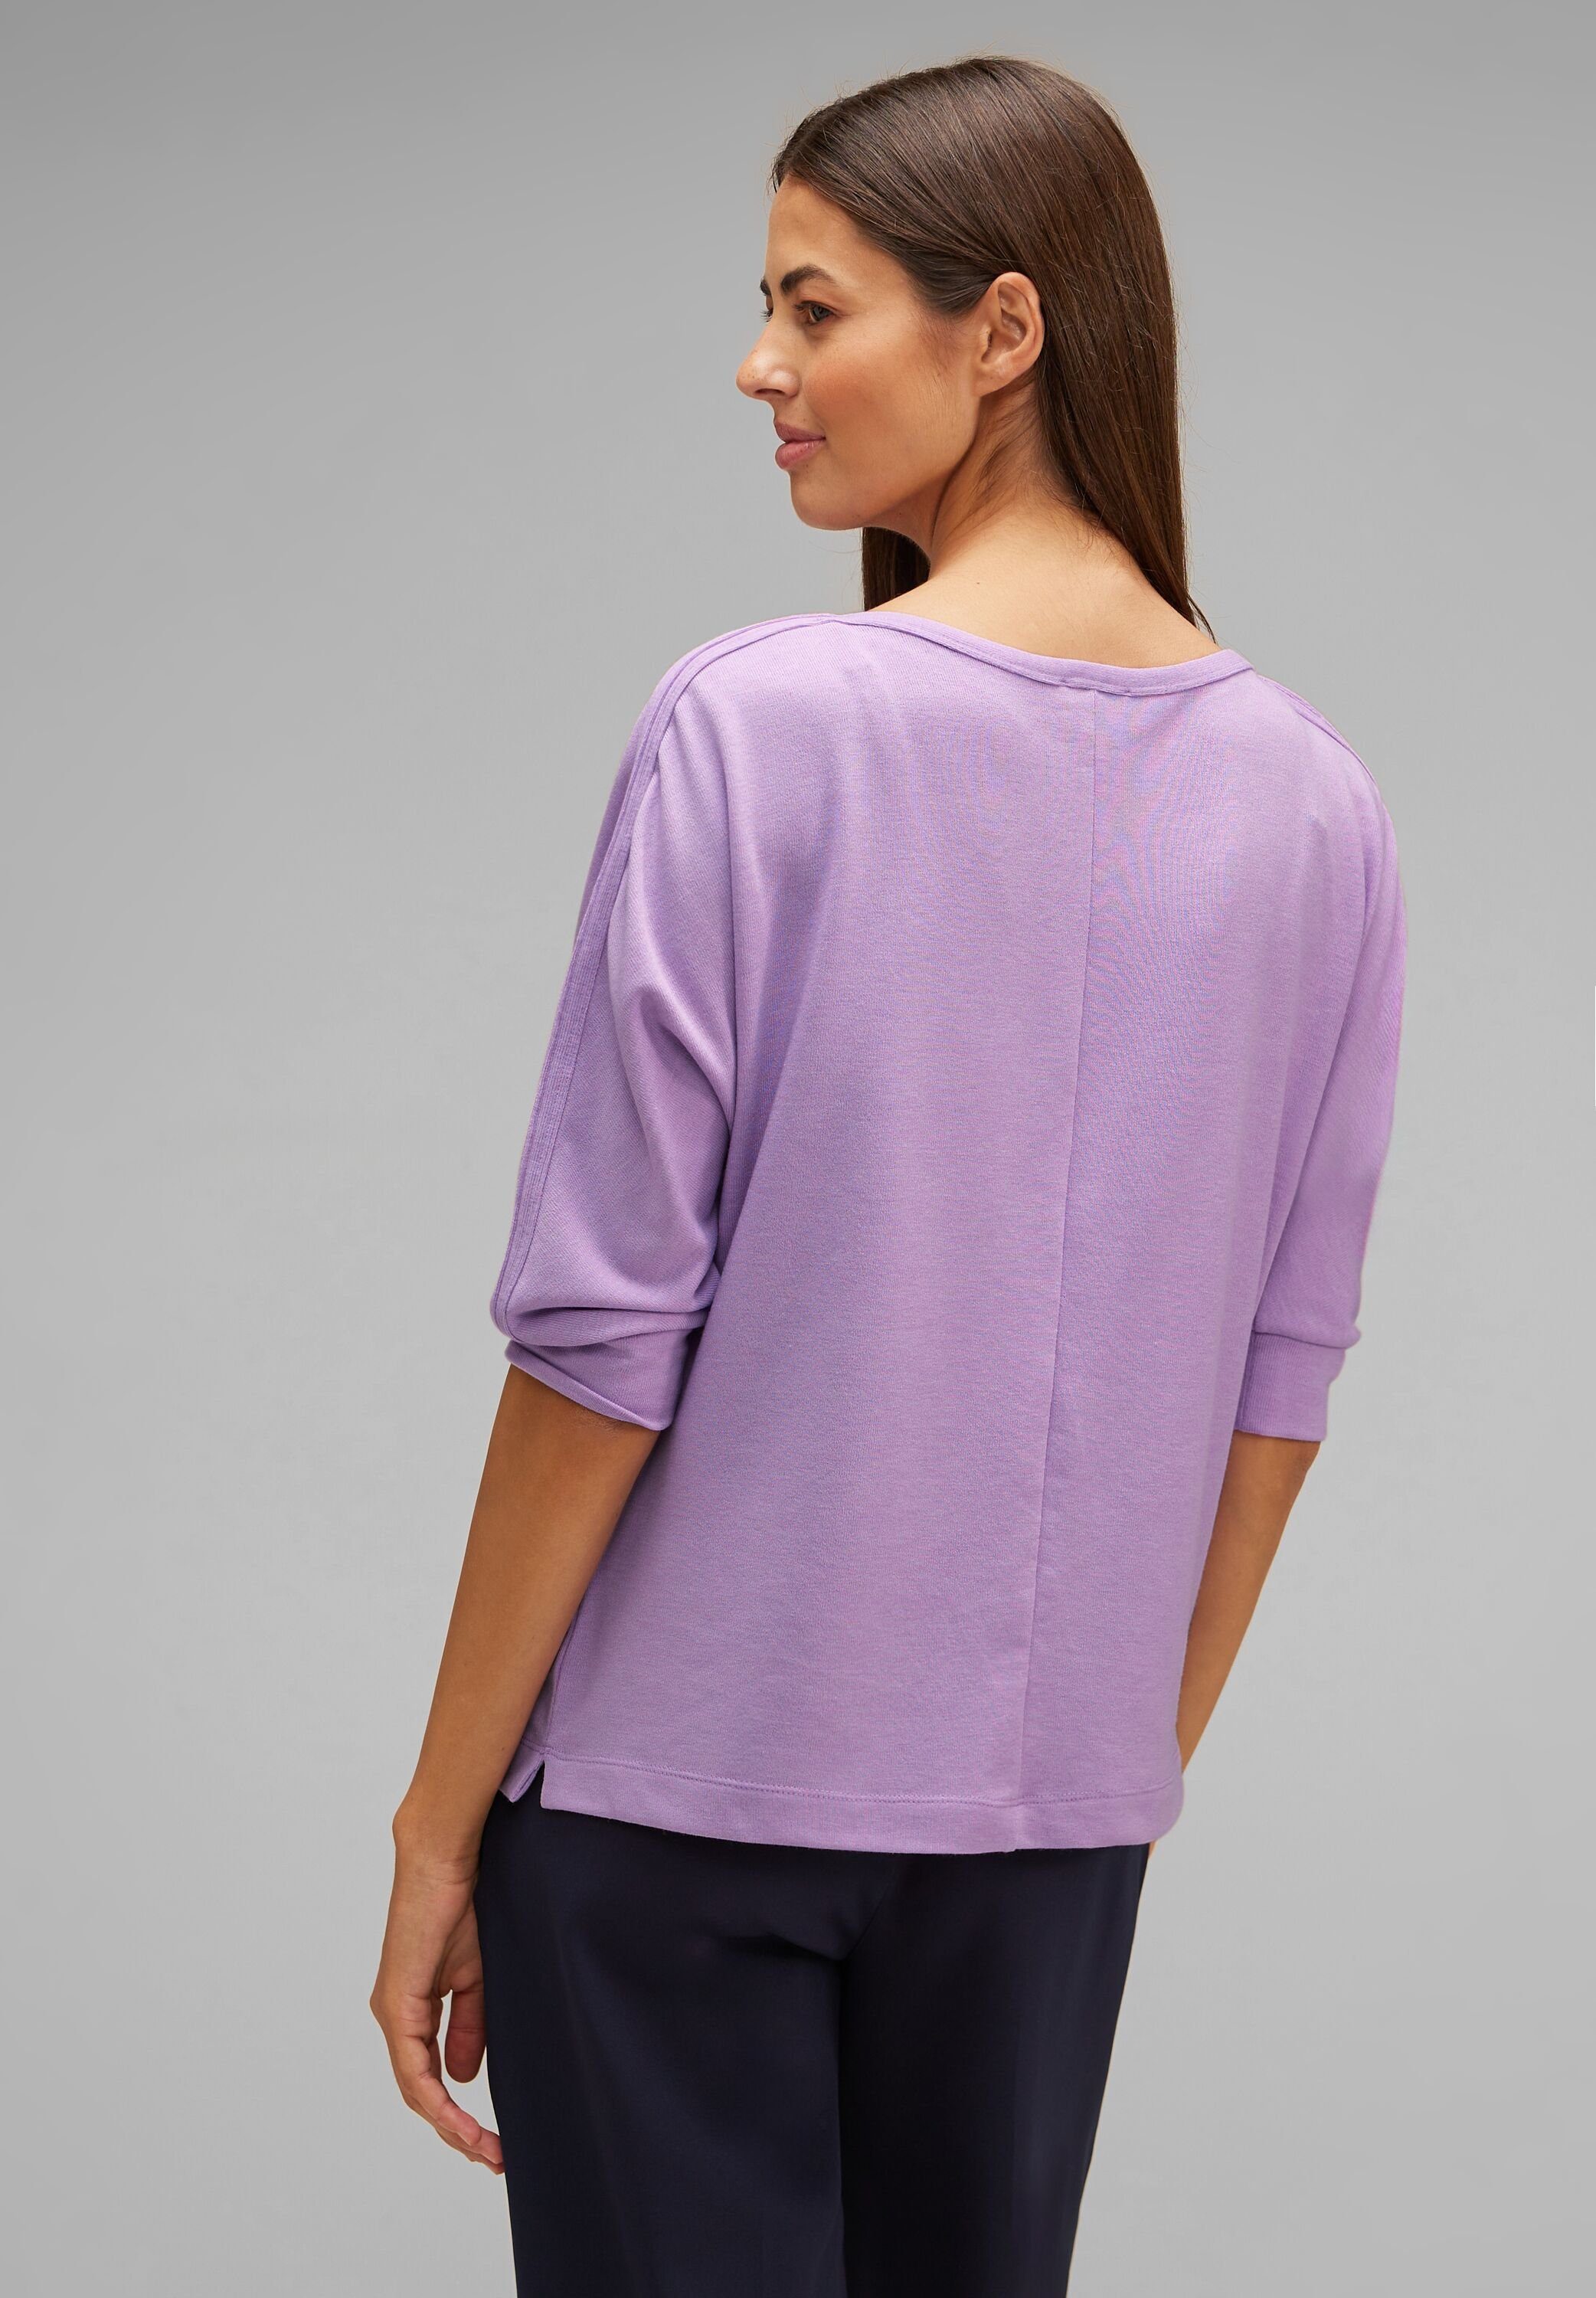 3/4-Arm-Shirt Shirt mit Wording soft Typo-Print lilac Schimmer Batwing ONE melange STREET Schimmernder pure